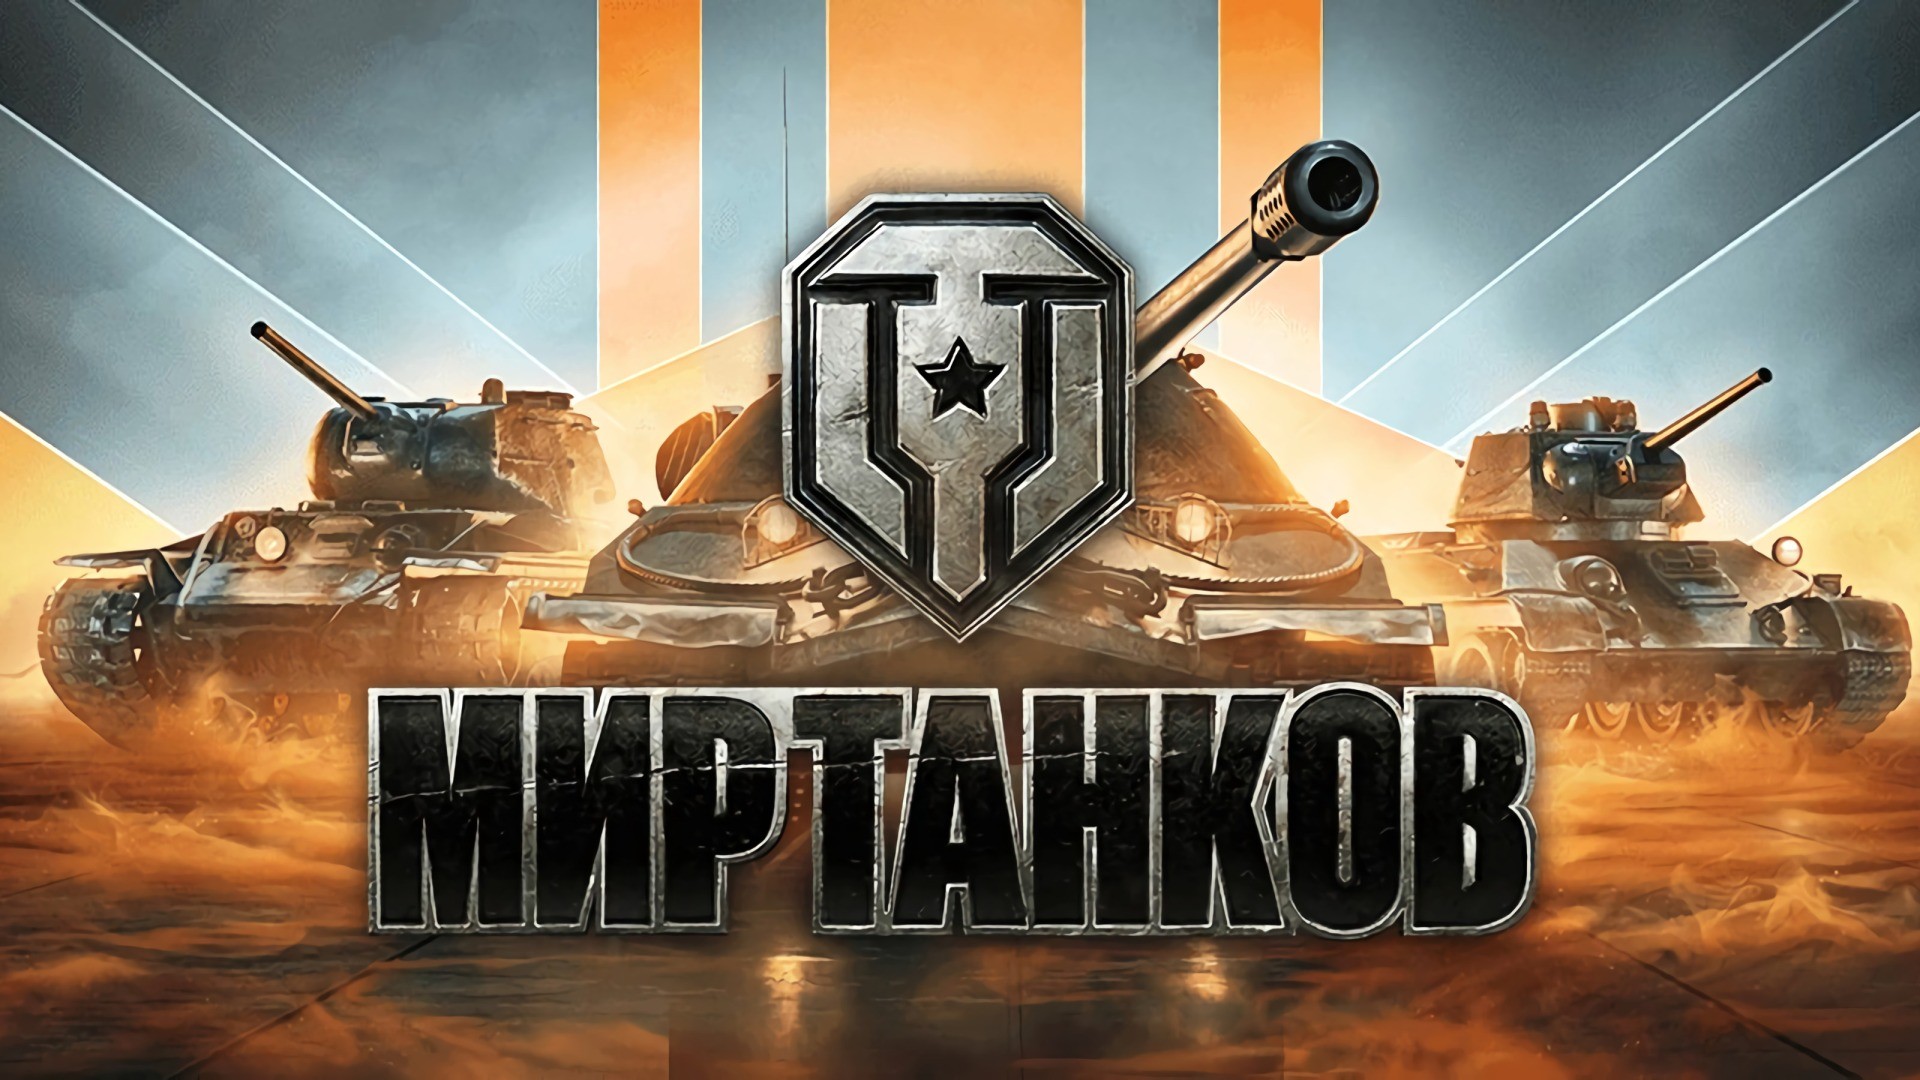 Натиск логотип чемпион мир танков